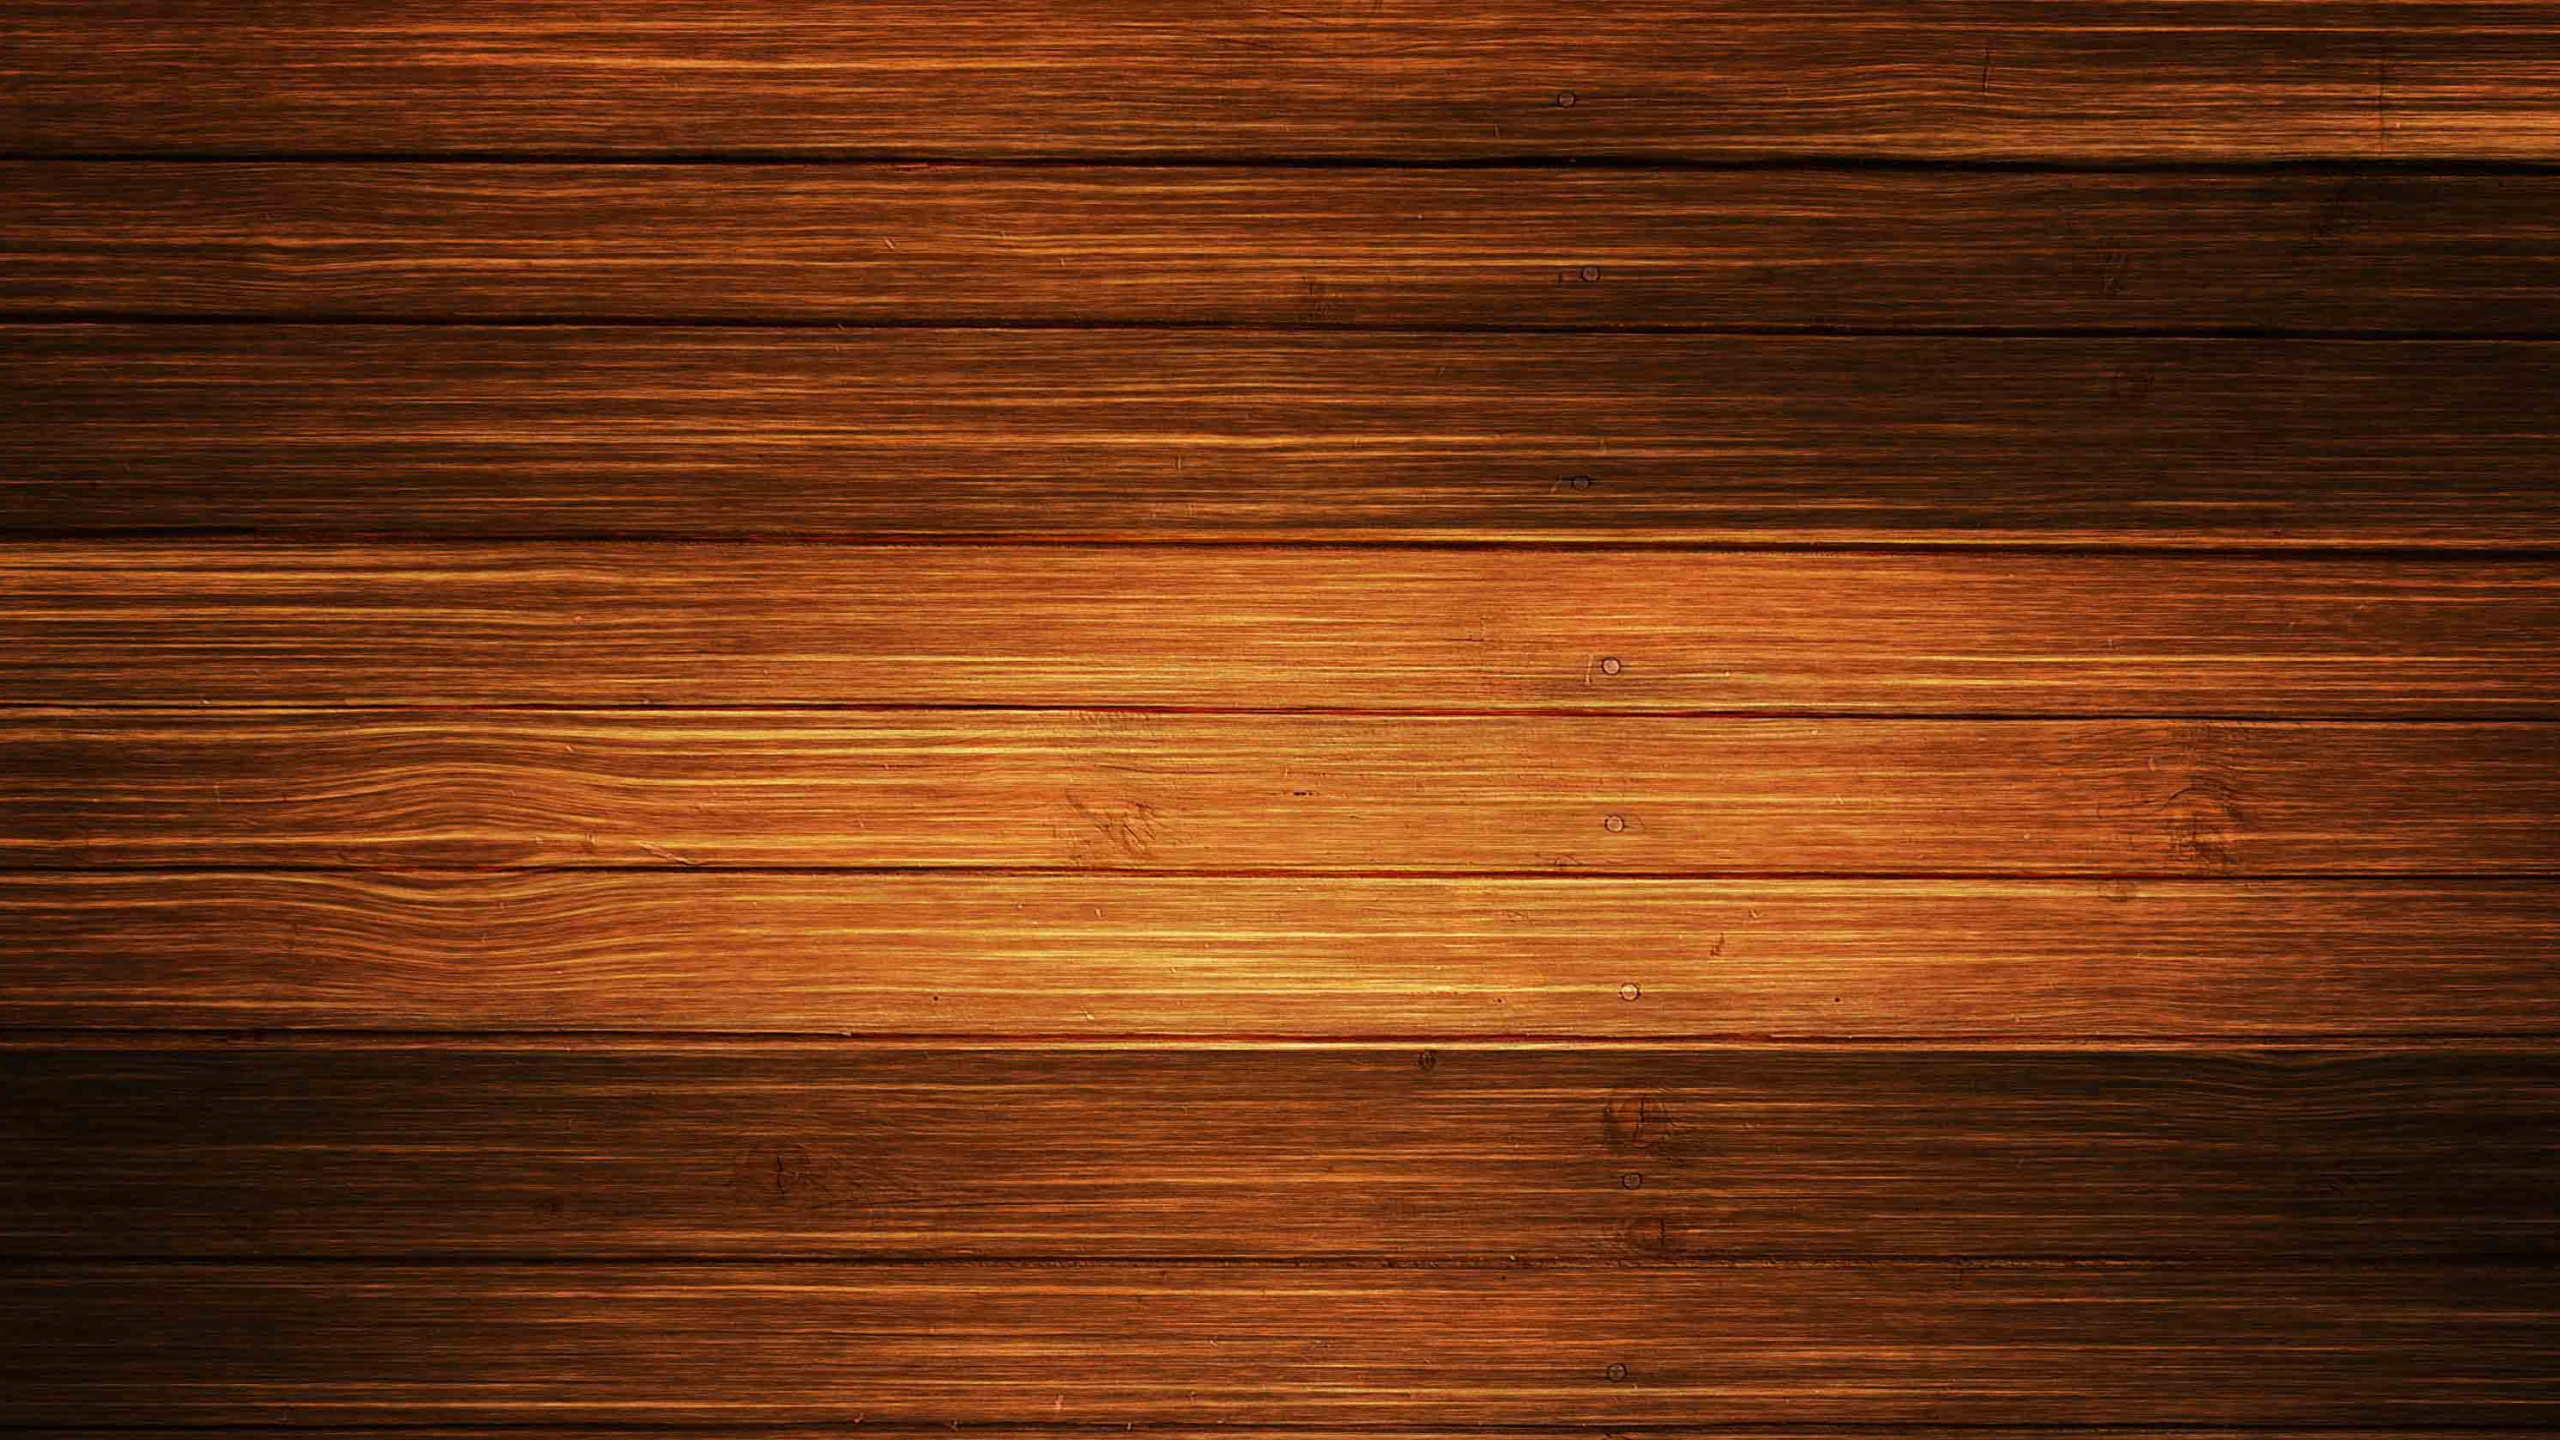 硬木, 地板, 木材, 胶合板, 木地板 壁纸 2560x1440 允许